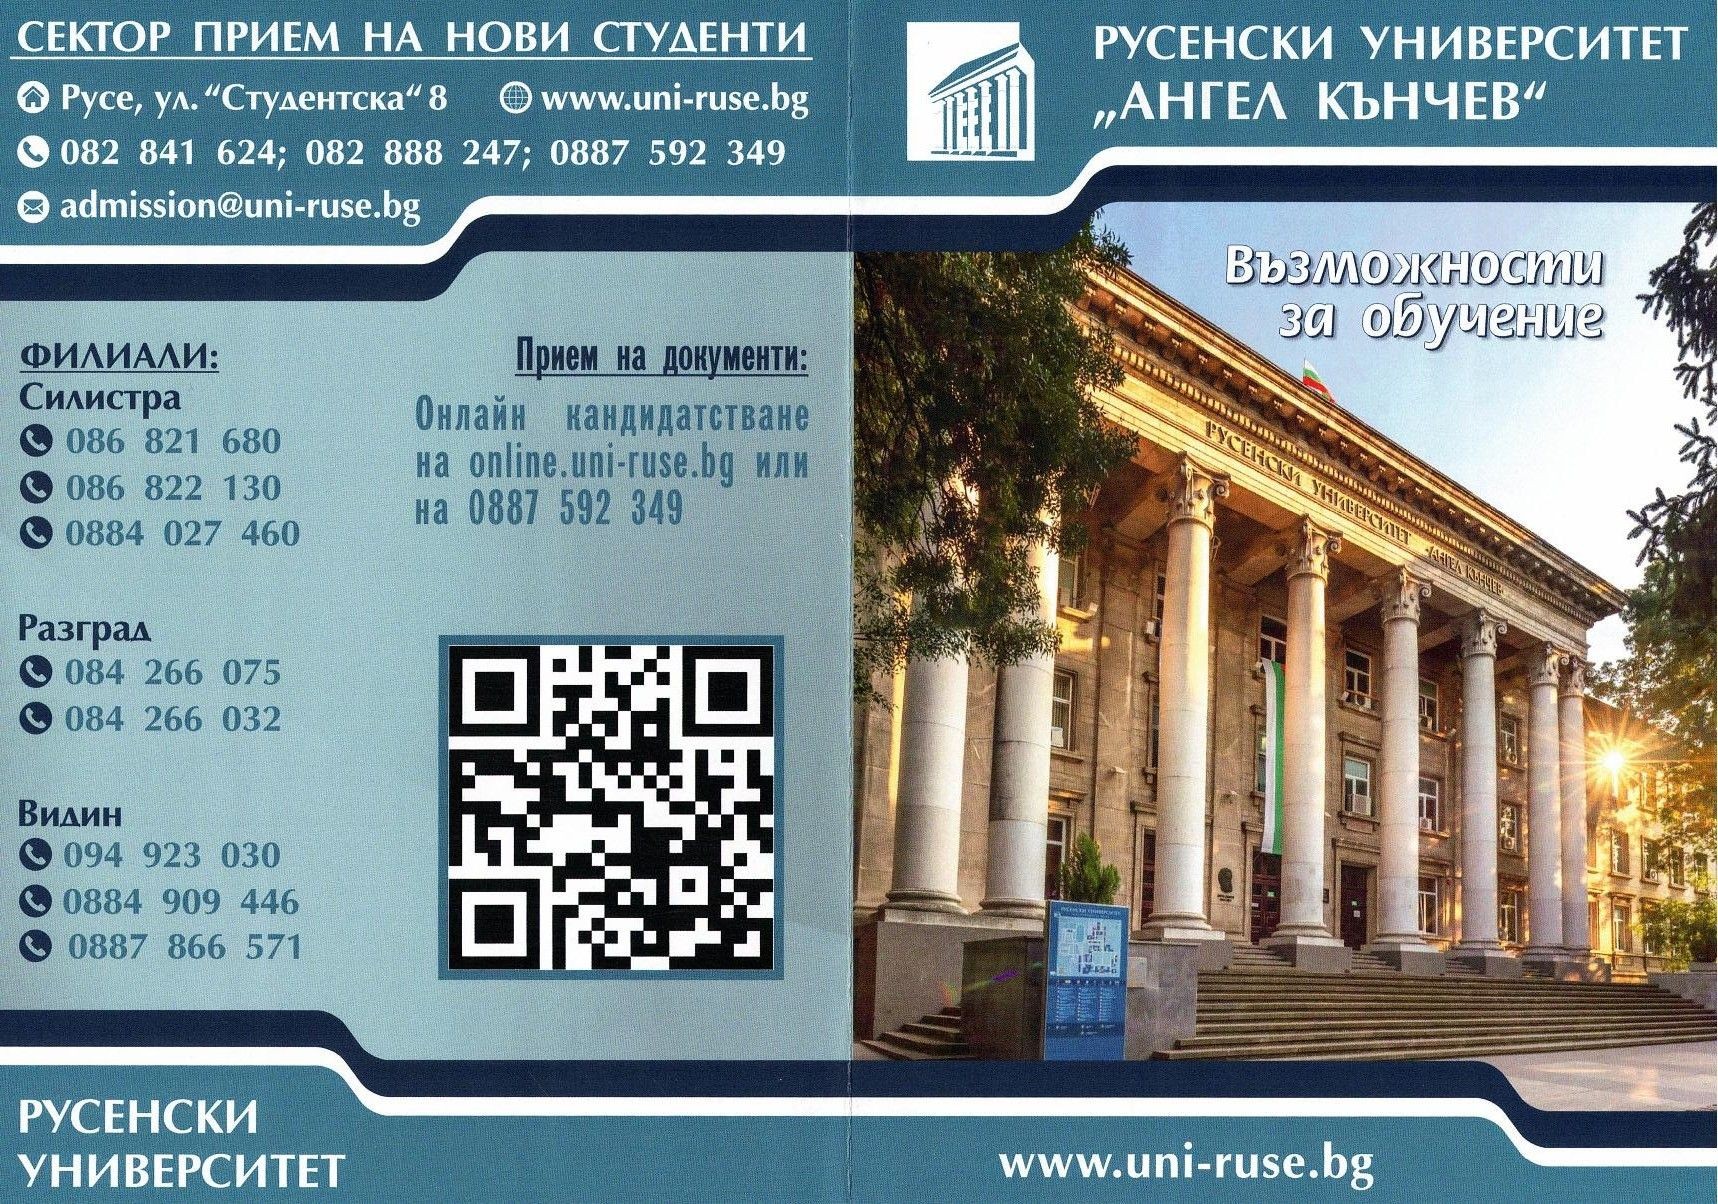  Осигурени са допълнителни възможности за поддаване на кандидатстудентски документи в Русенския университет.
